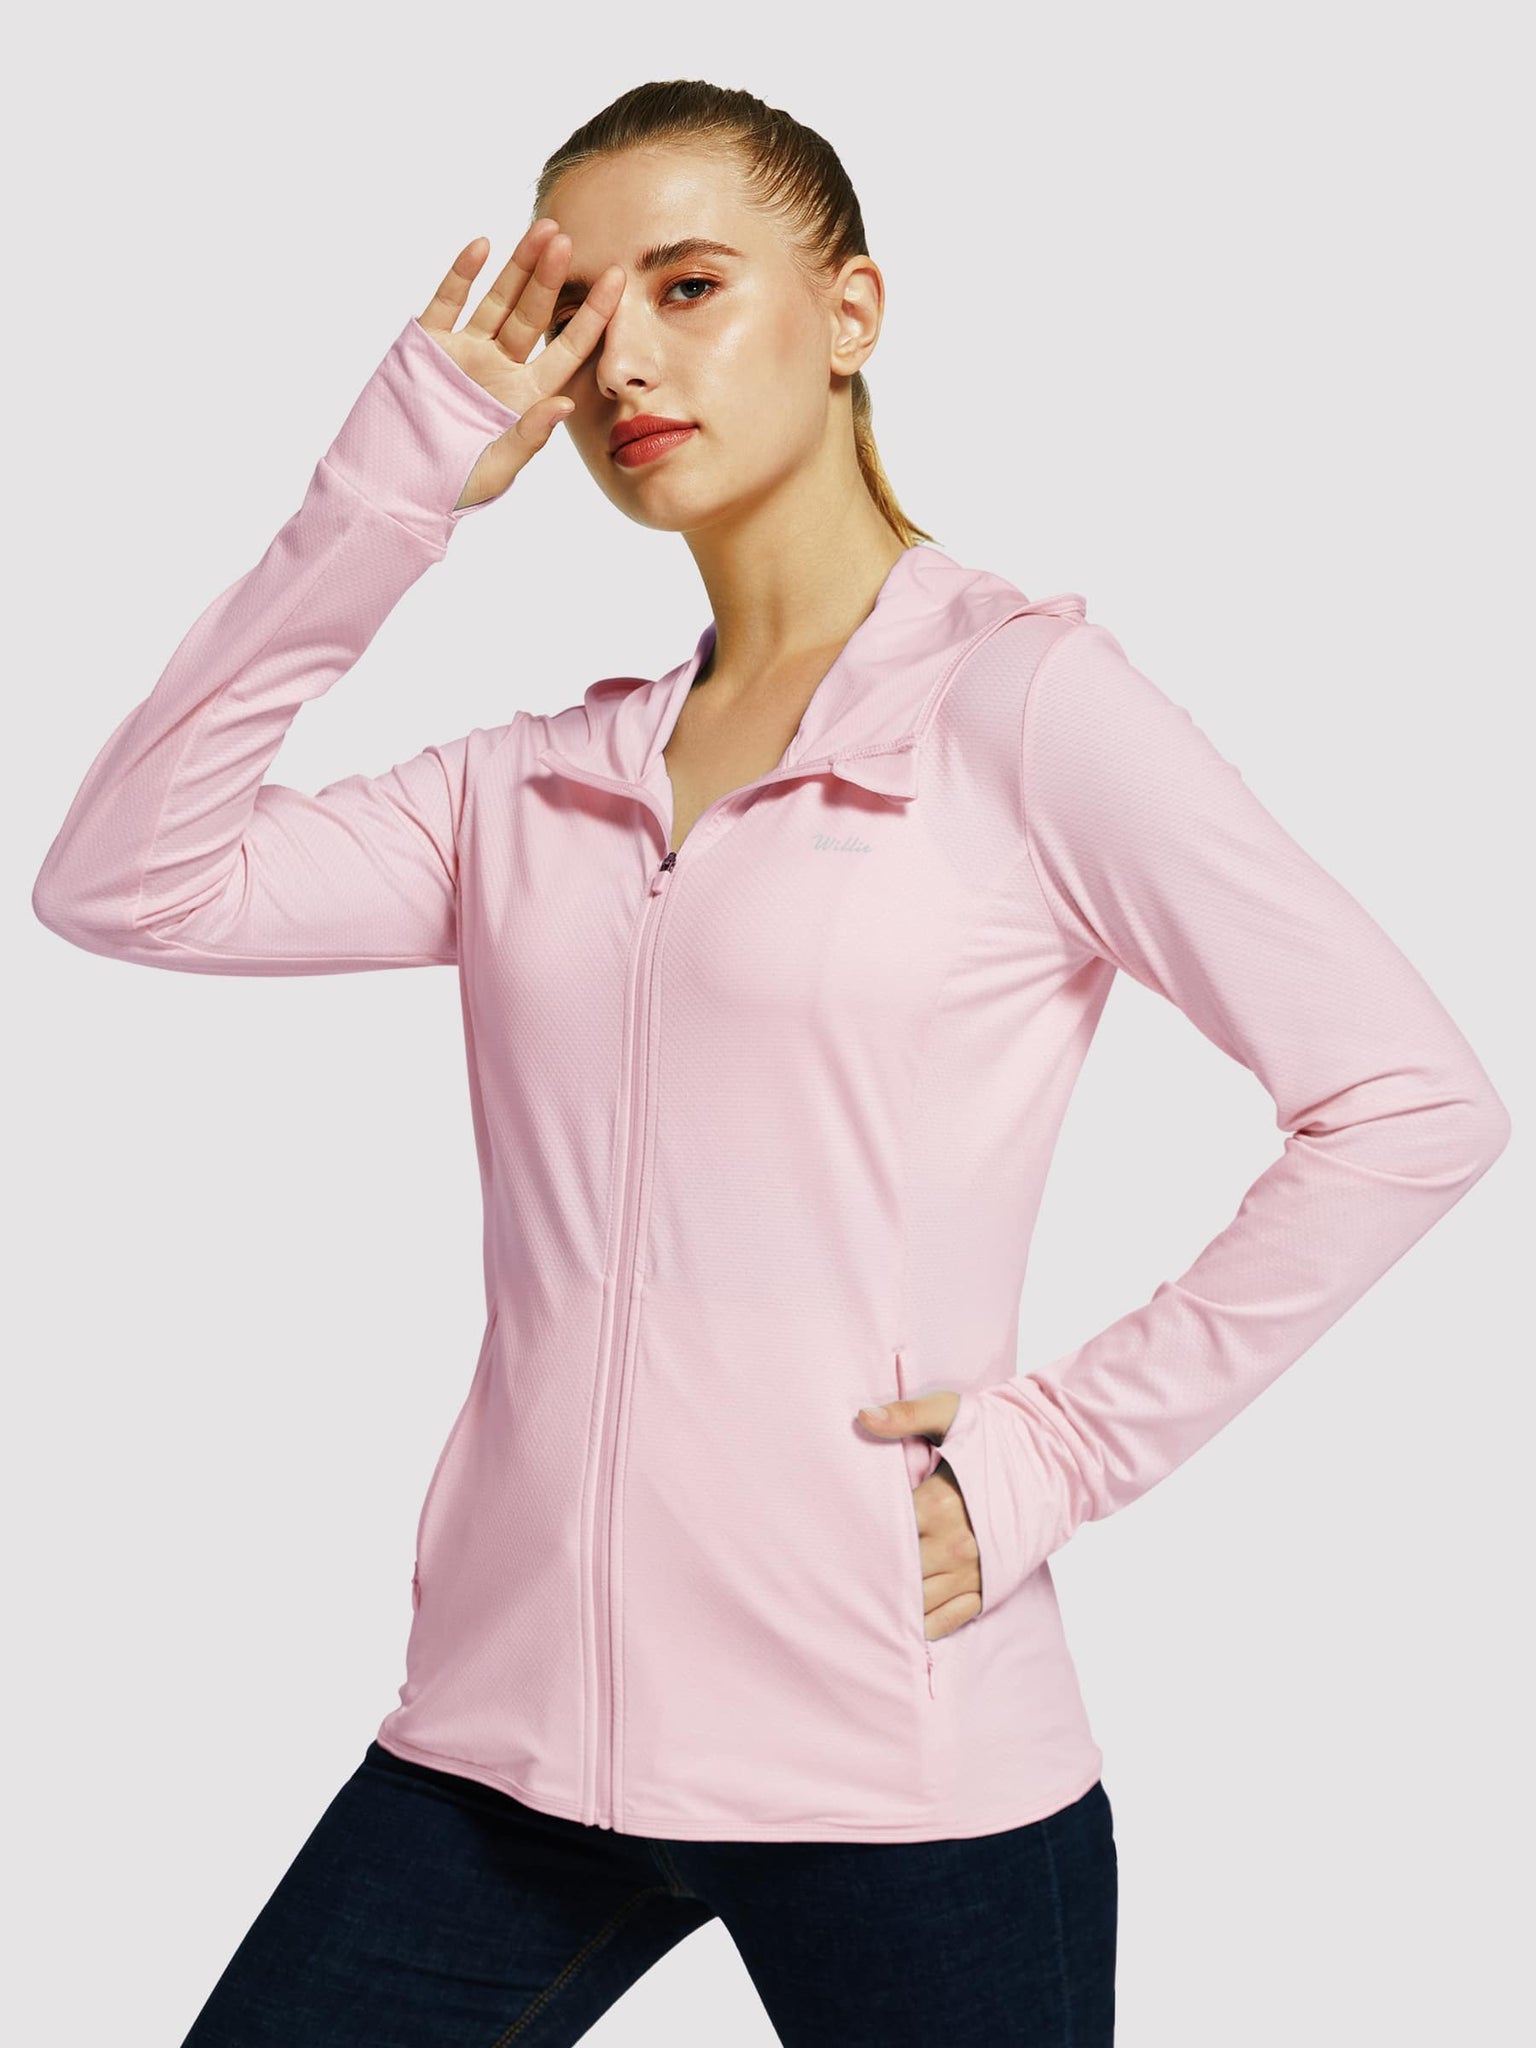 Willit Women's Outdoor Sun Protection Jacket Full Zip_Pink_model3